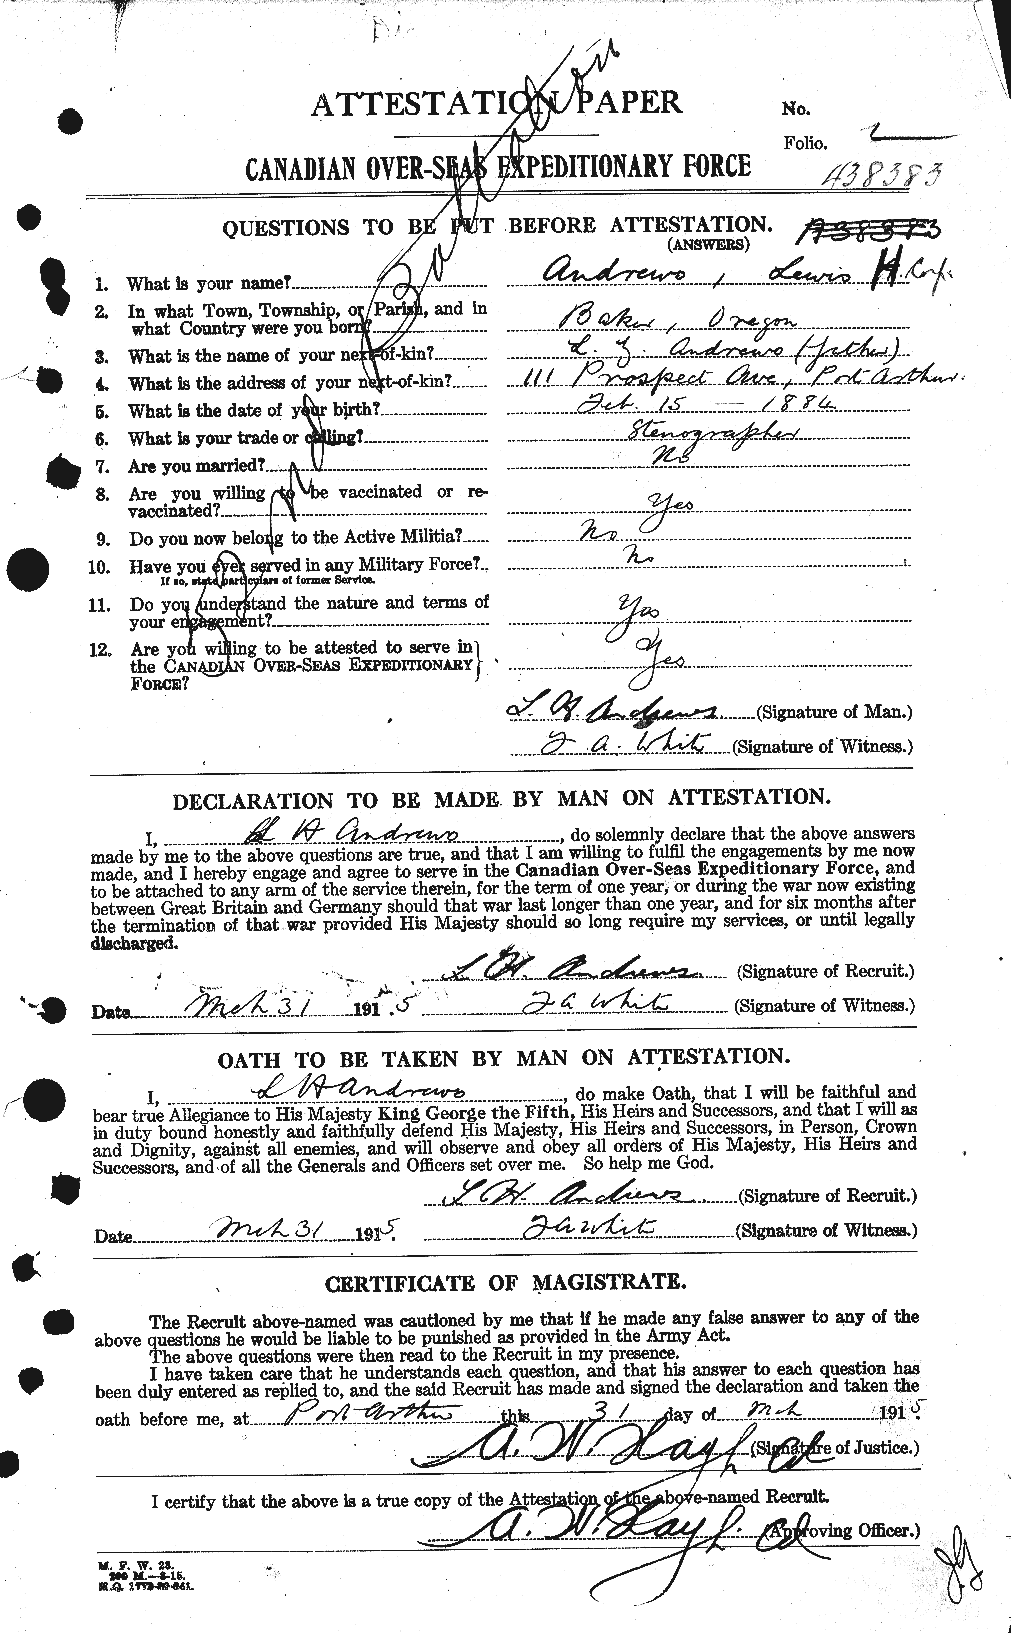 Dossiers du Personnel de la Première Guerre mondiale - CEC 210172a